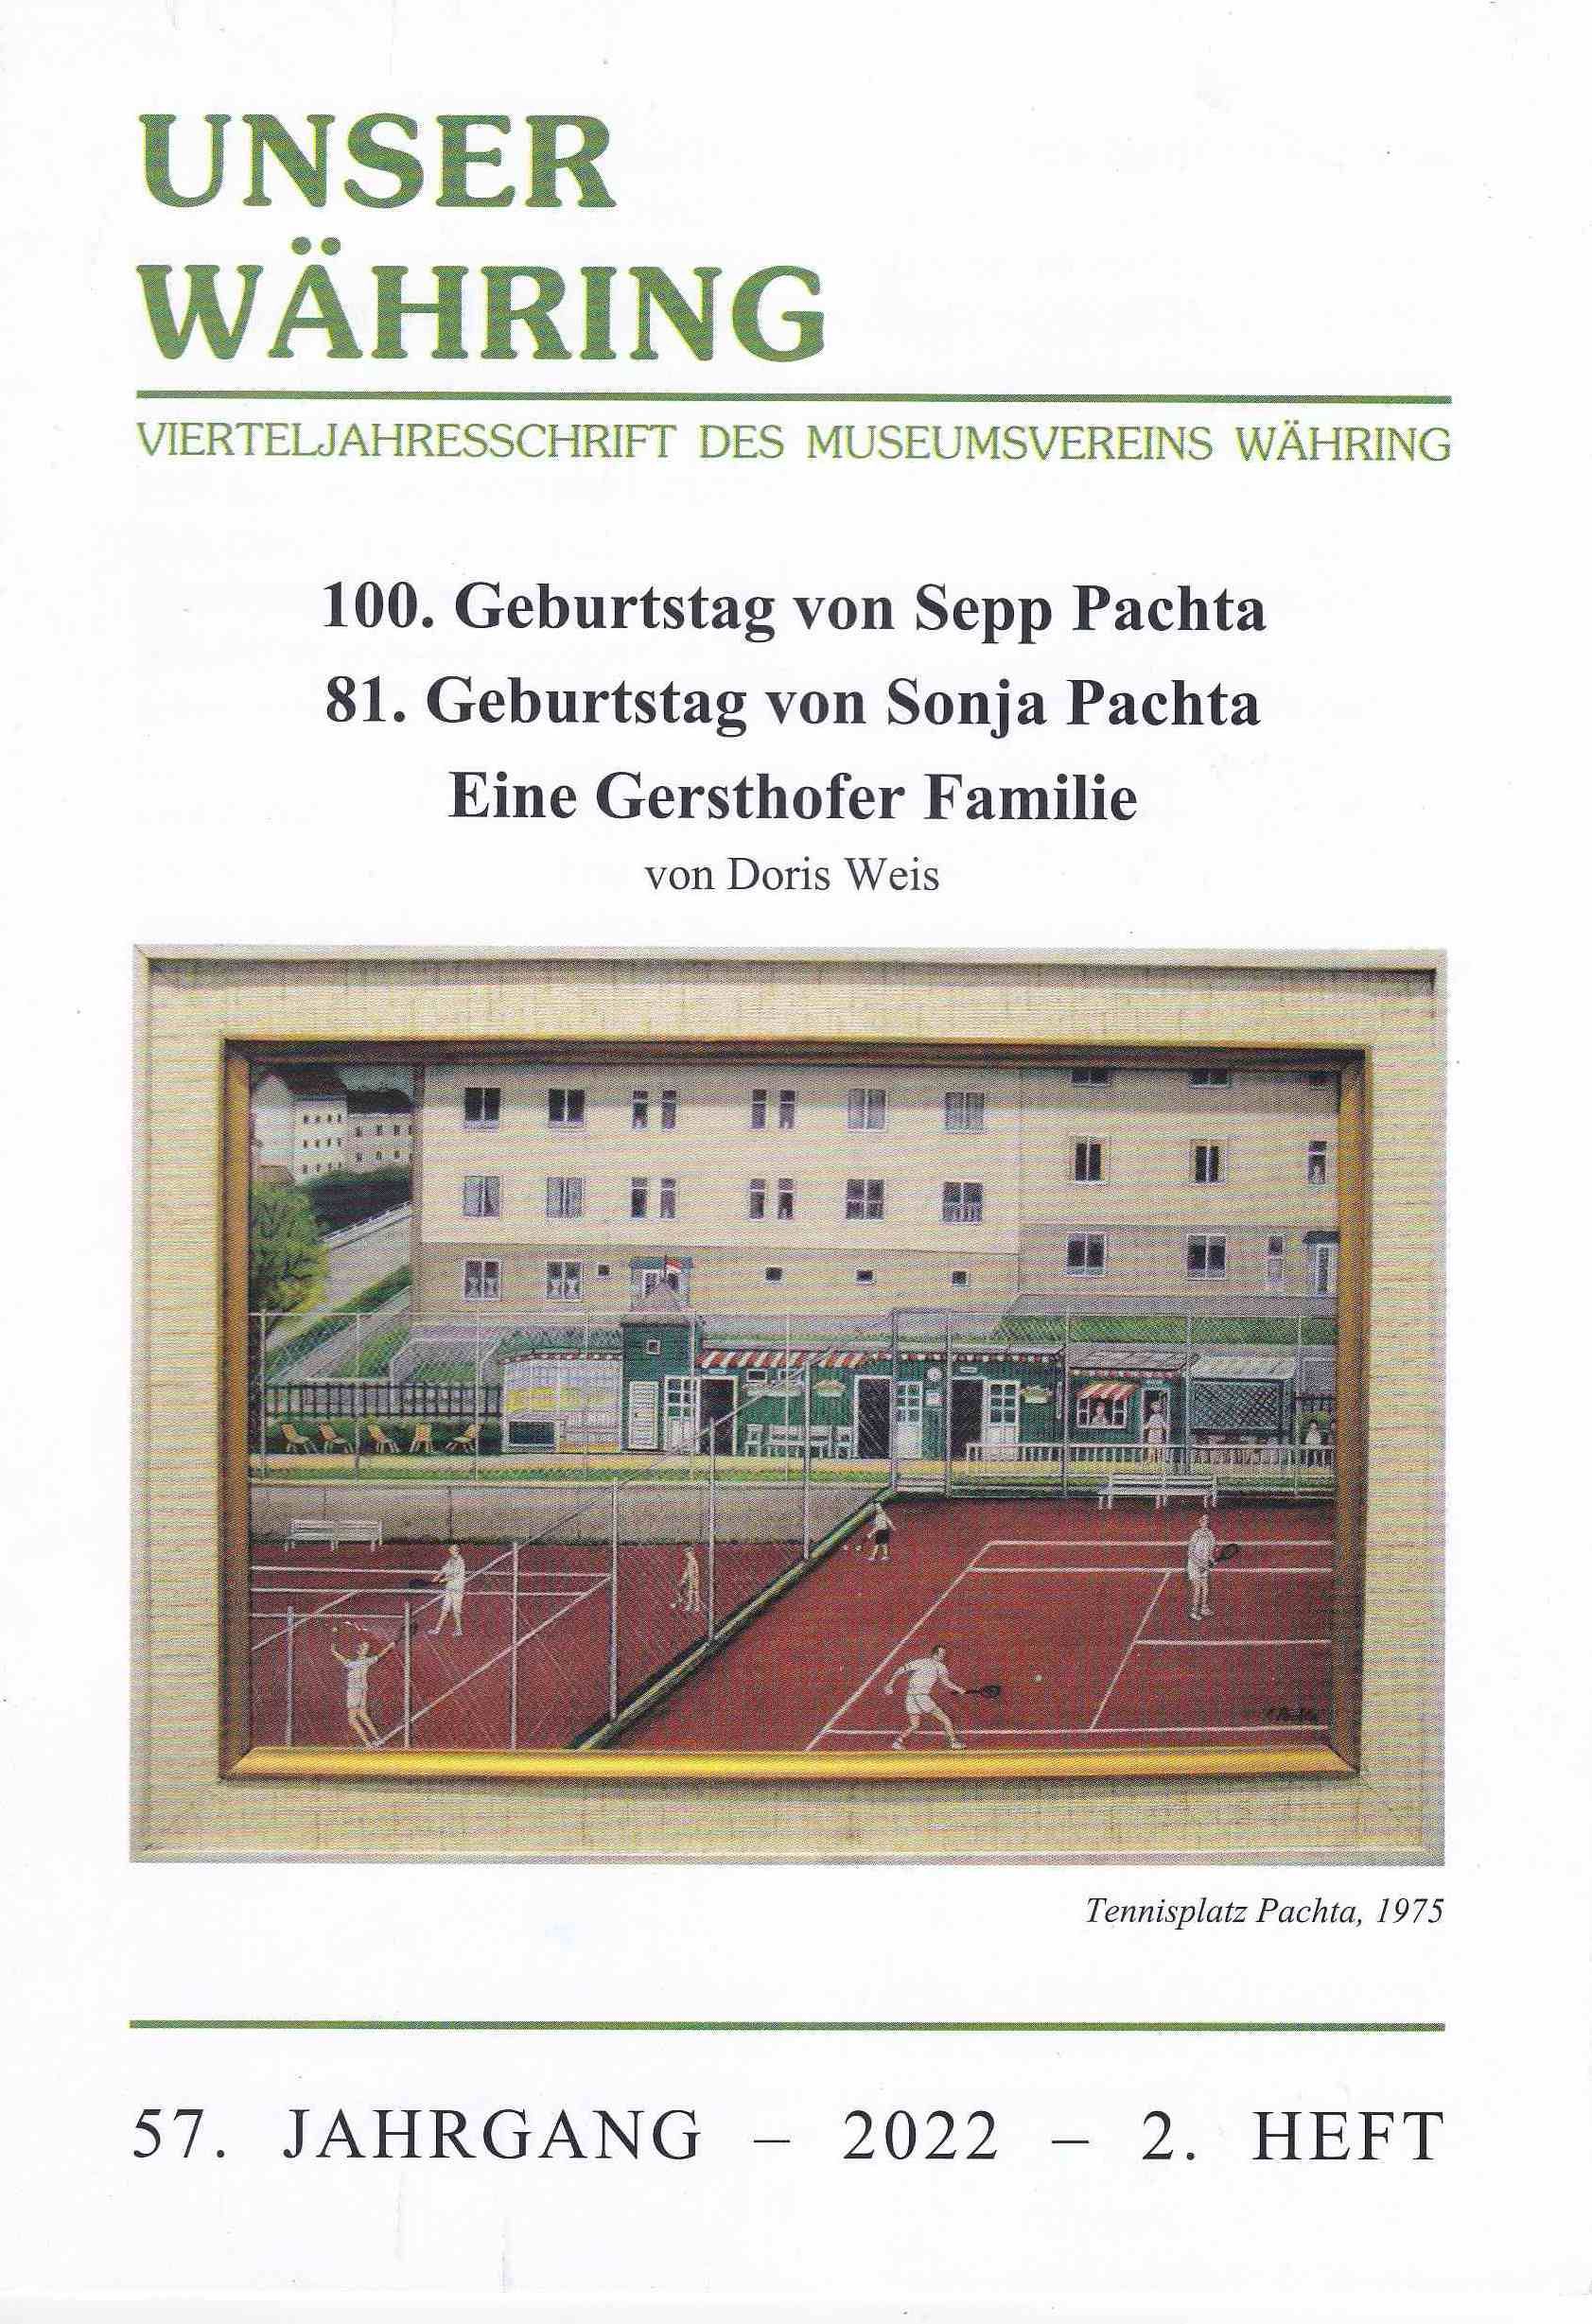 Publikation: 120. Geburtstag Sepp Pachta. 81. Geburtstag Sonja Pachta. Eine Gersthofer Familie, Bezirksmuseum Währing